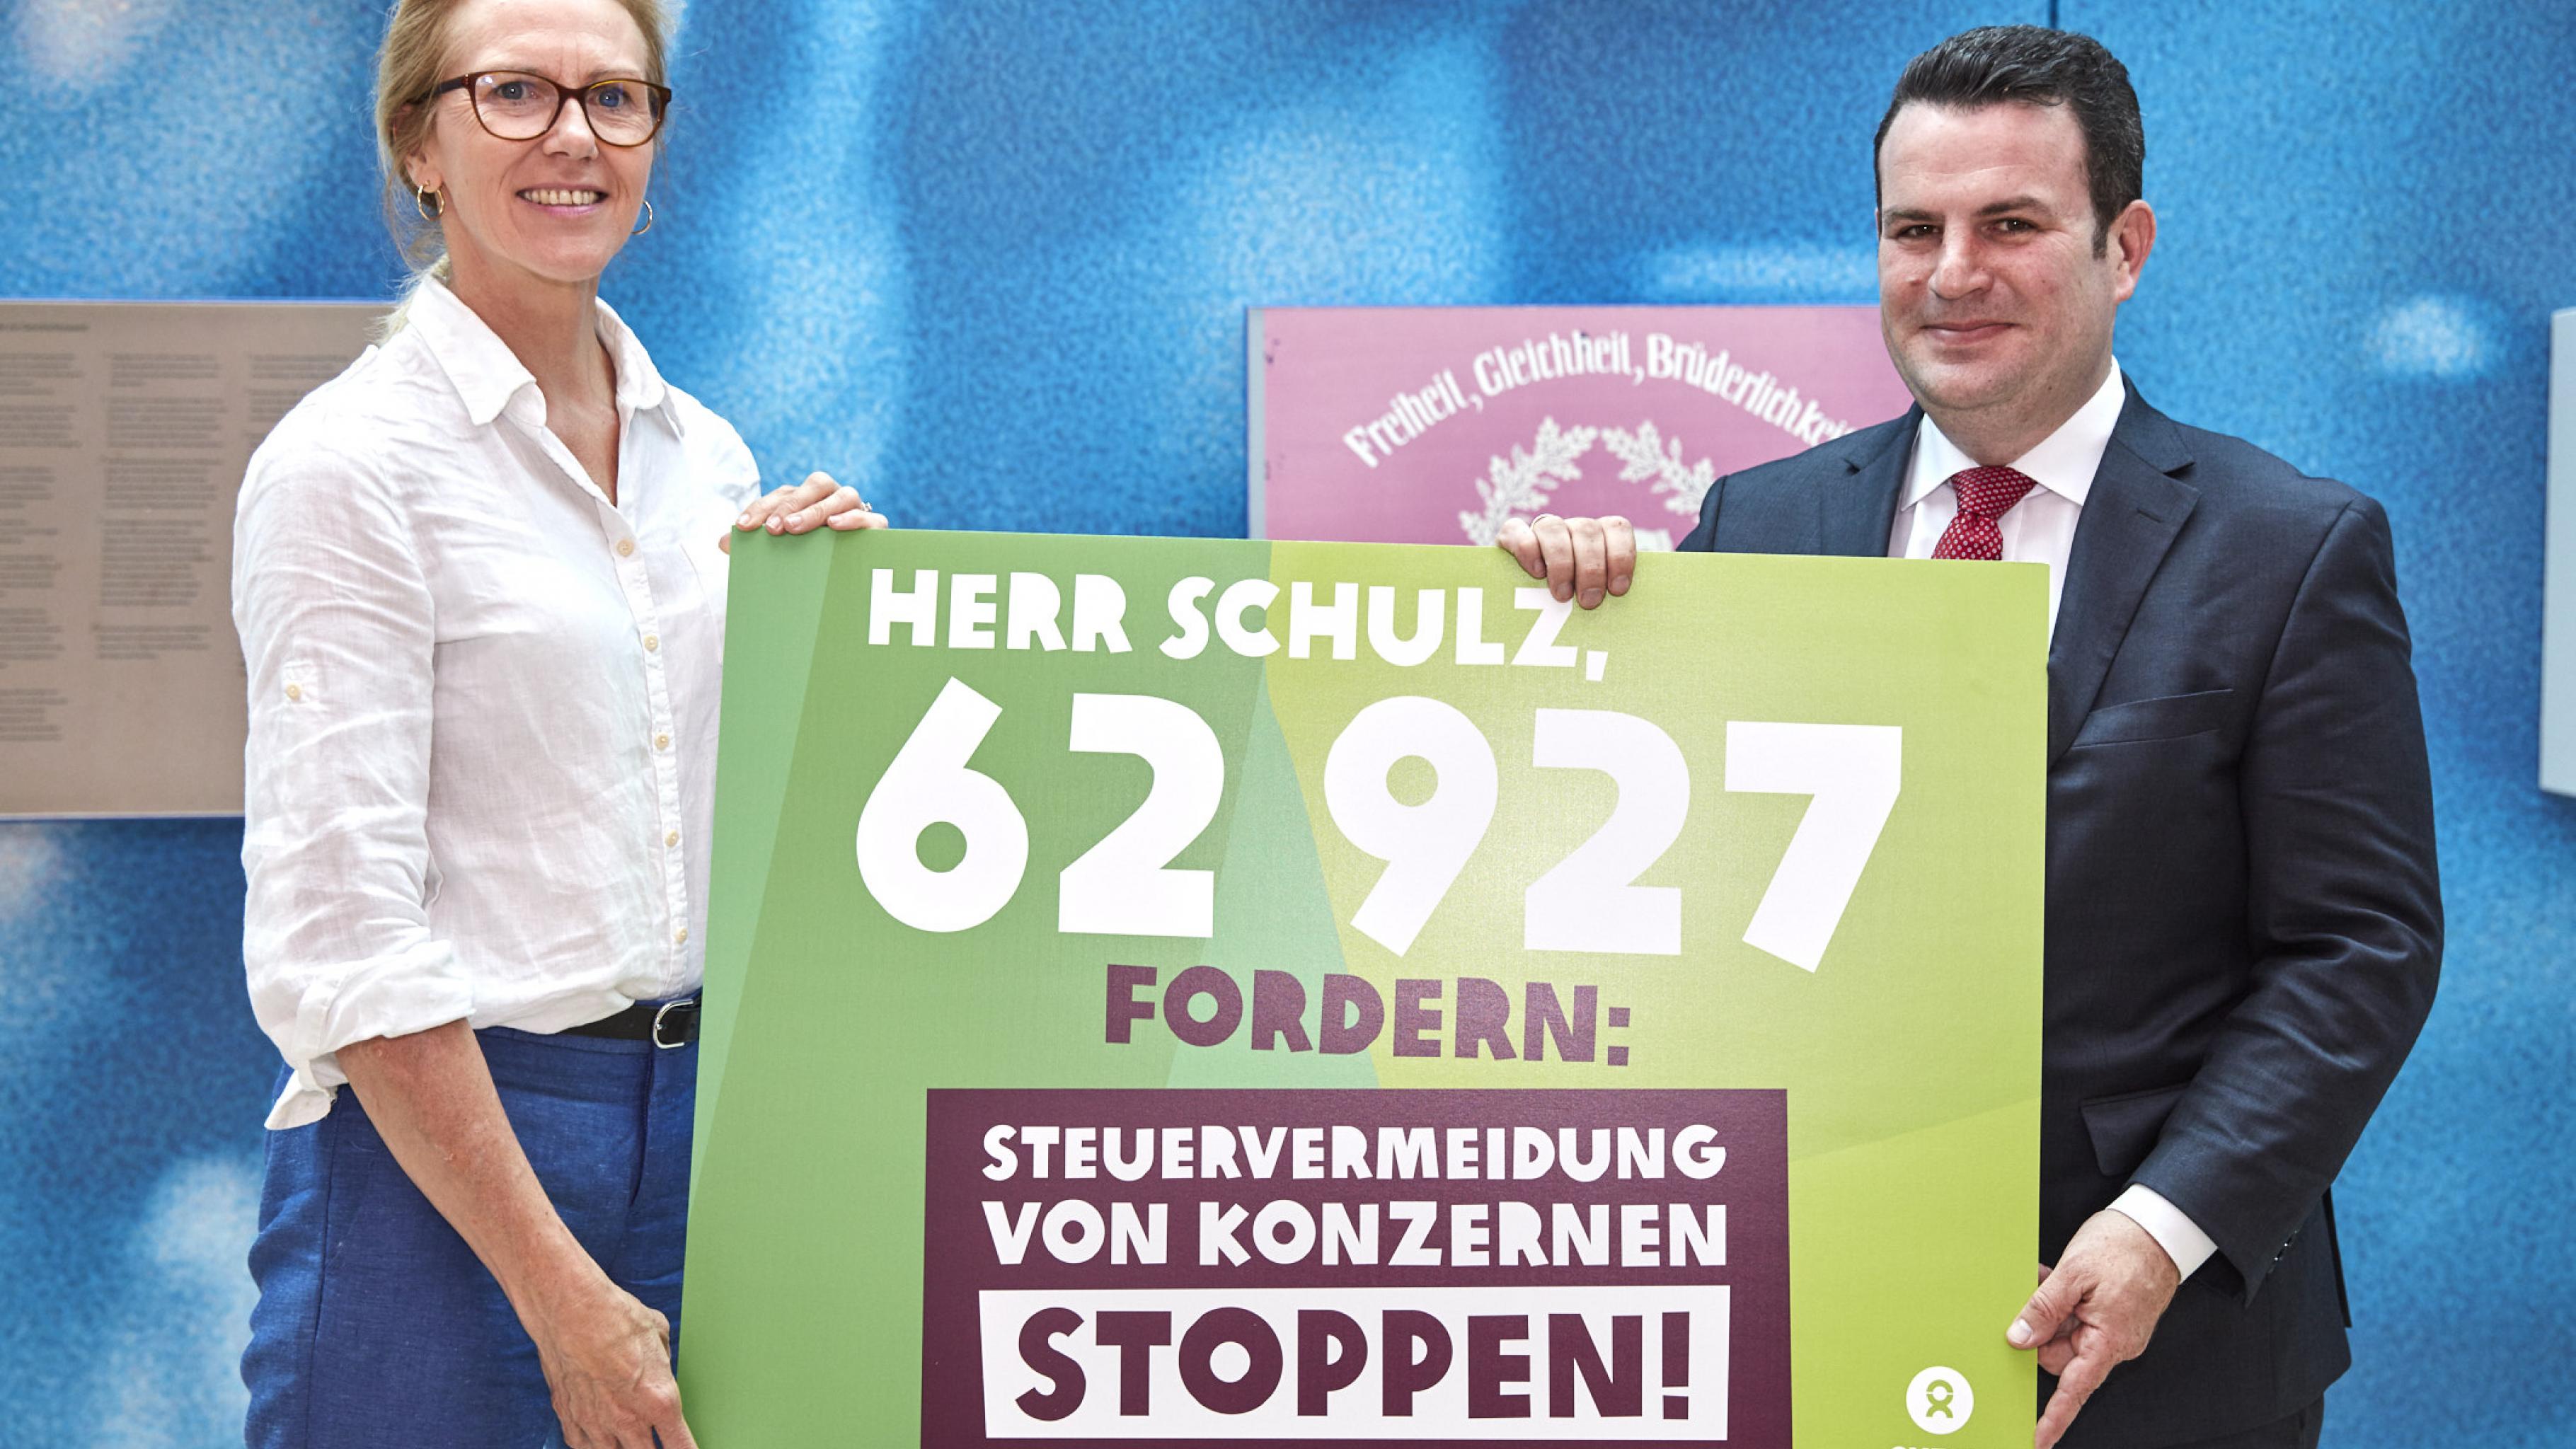 Marion Lieser und Hubertus Heil halten ein Plakat mit der Aufschrift: „Herr Schulz, 62927 fordern: Steuervermeidung von Konzernen stoppen!“